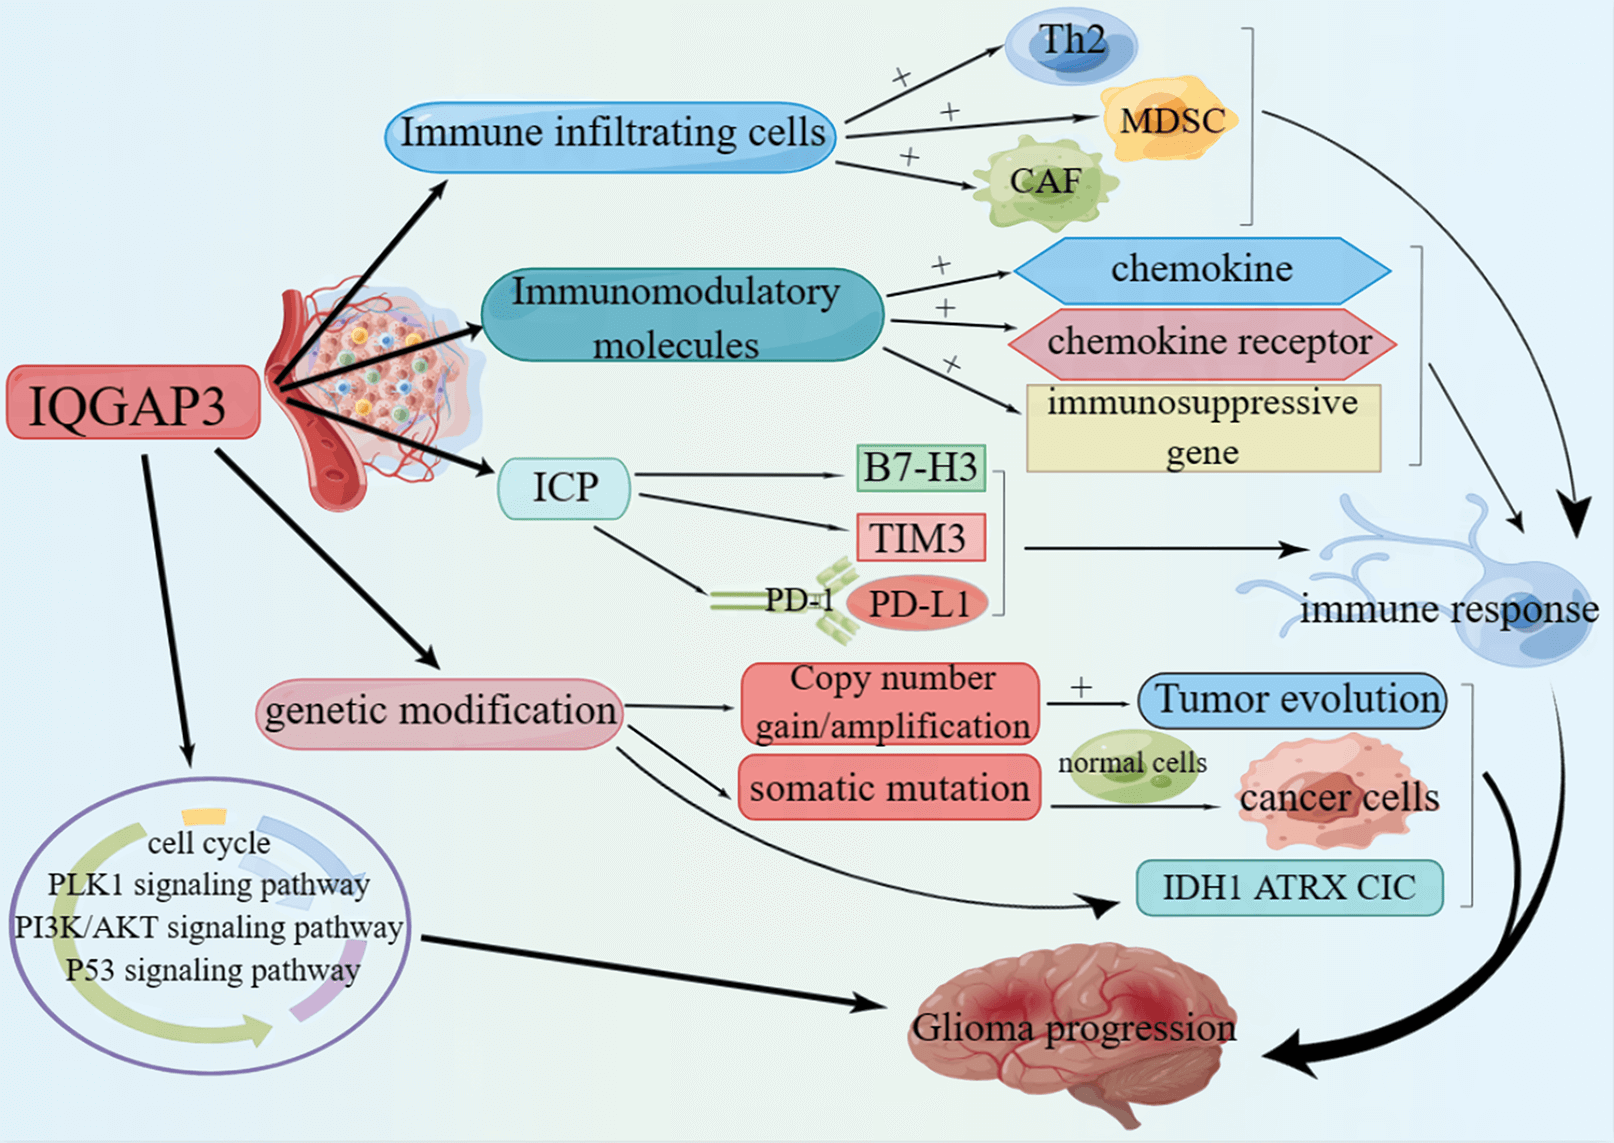 IQGAP3 promotes the progression of glioma as an immune and prognostic marker